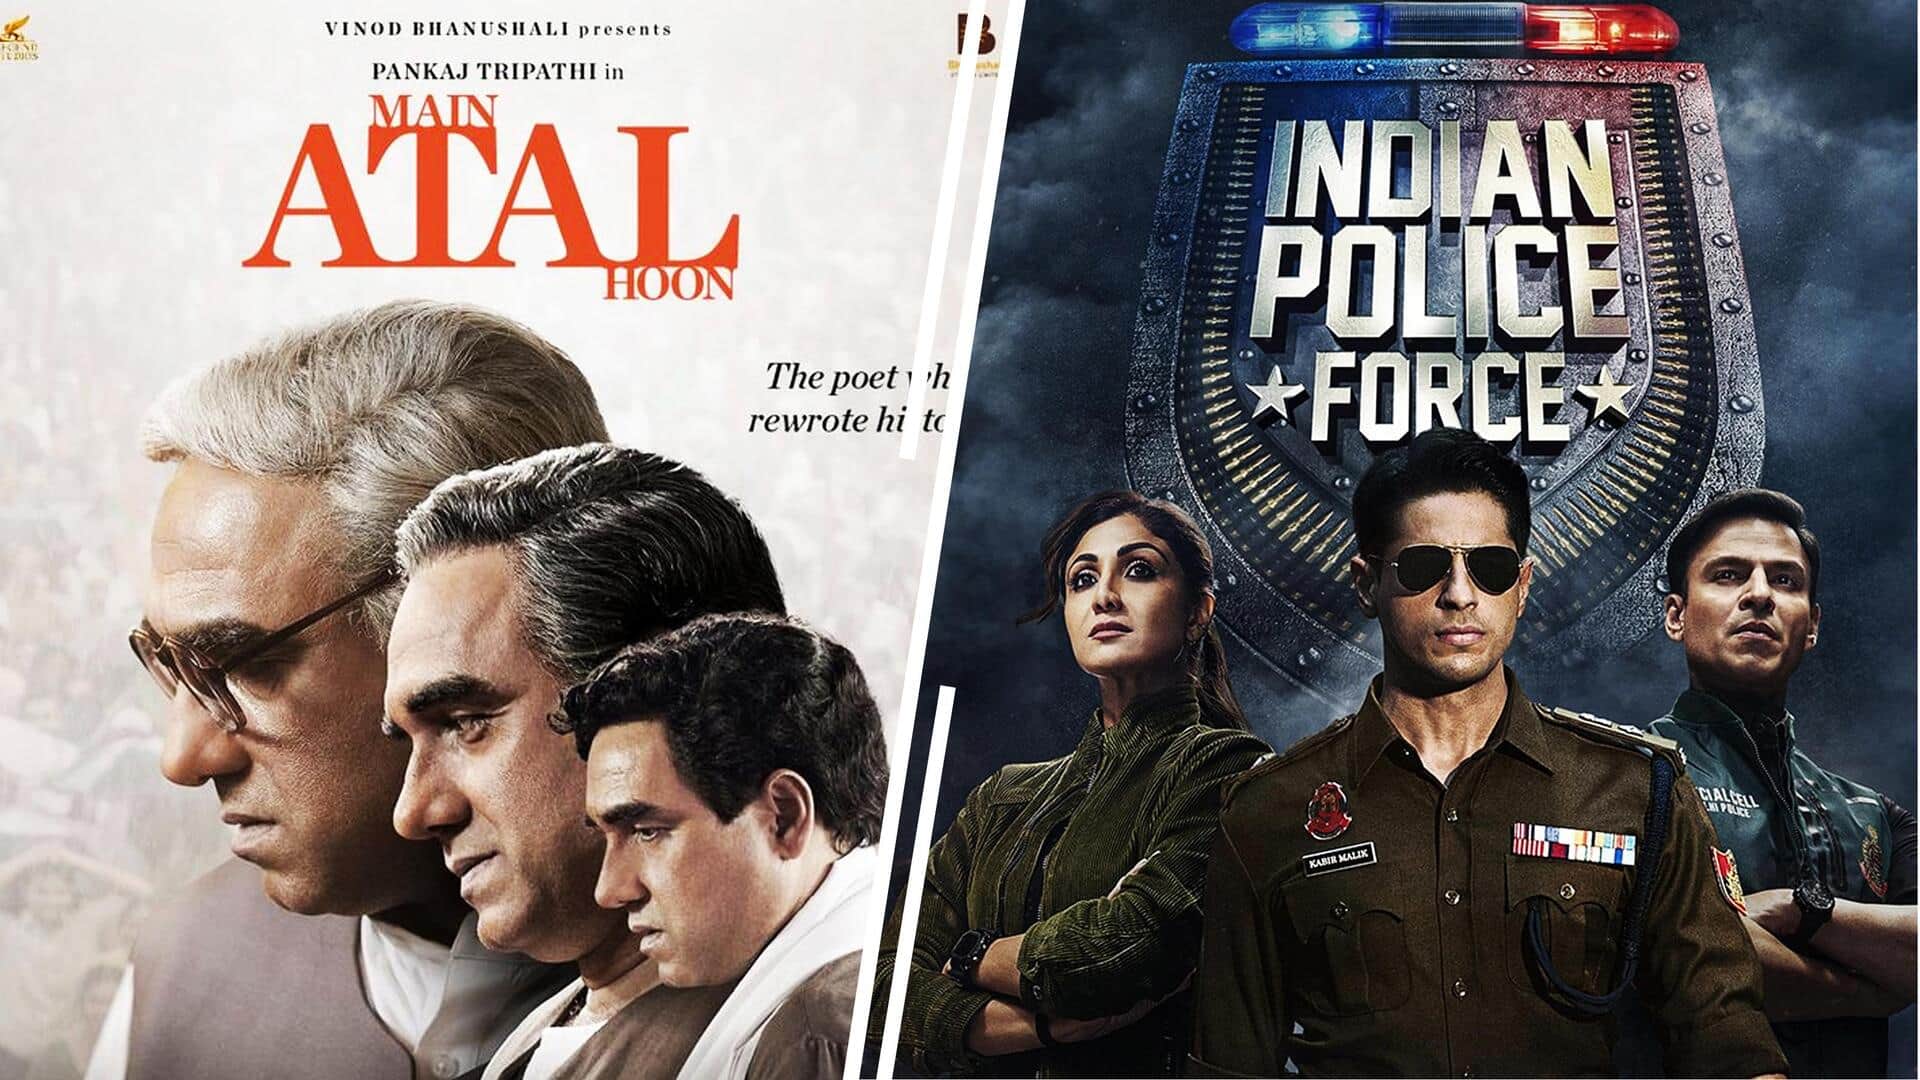 OTT पर इस हफ्ते दस्तक देगी 'इंडियन पुलिस फोर्स', 'मैं अटल हूं' करेगी सिनेमाघरों का रुख